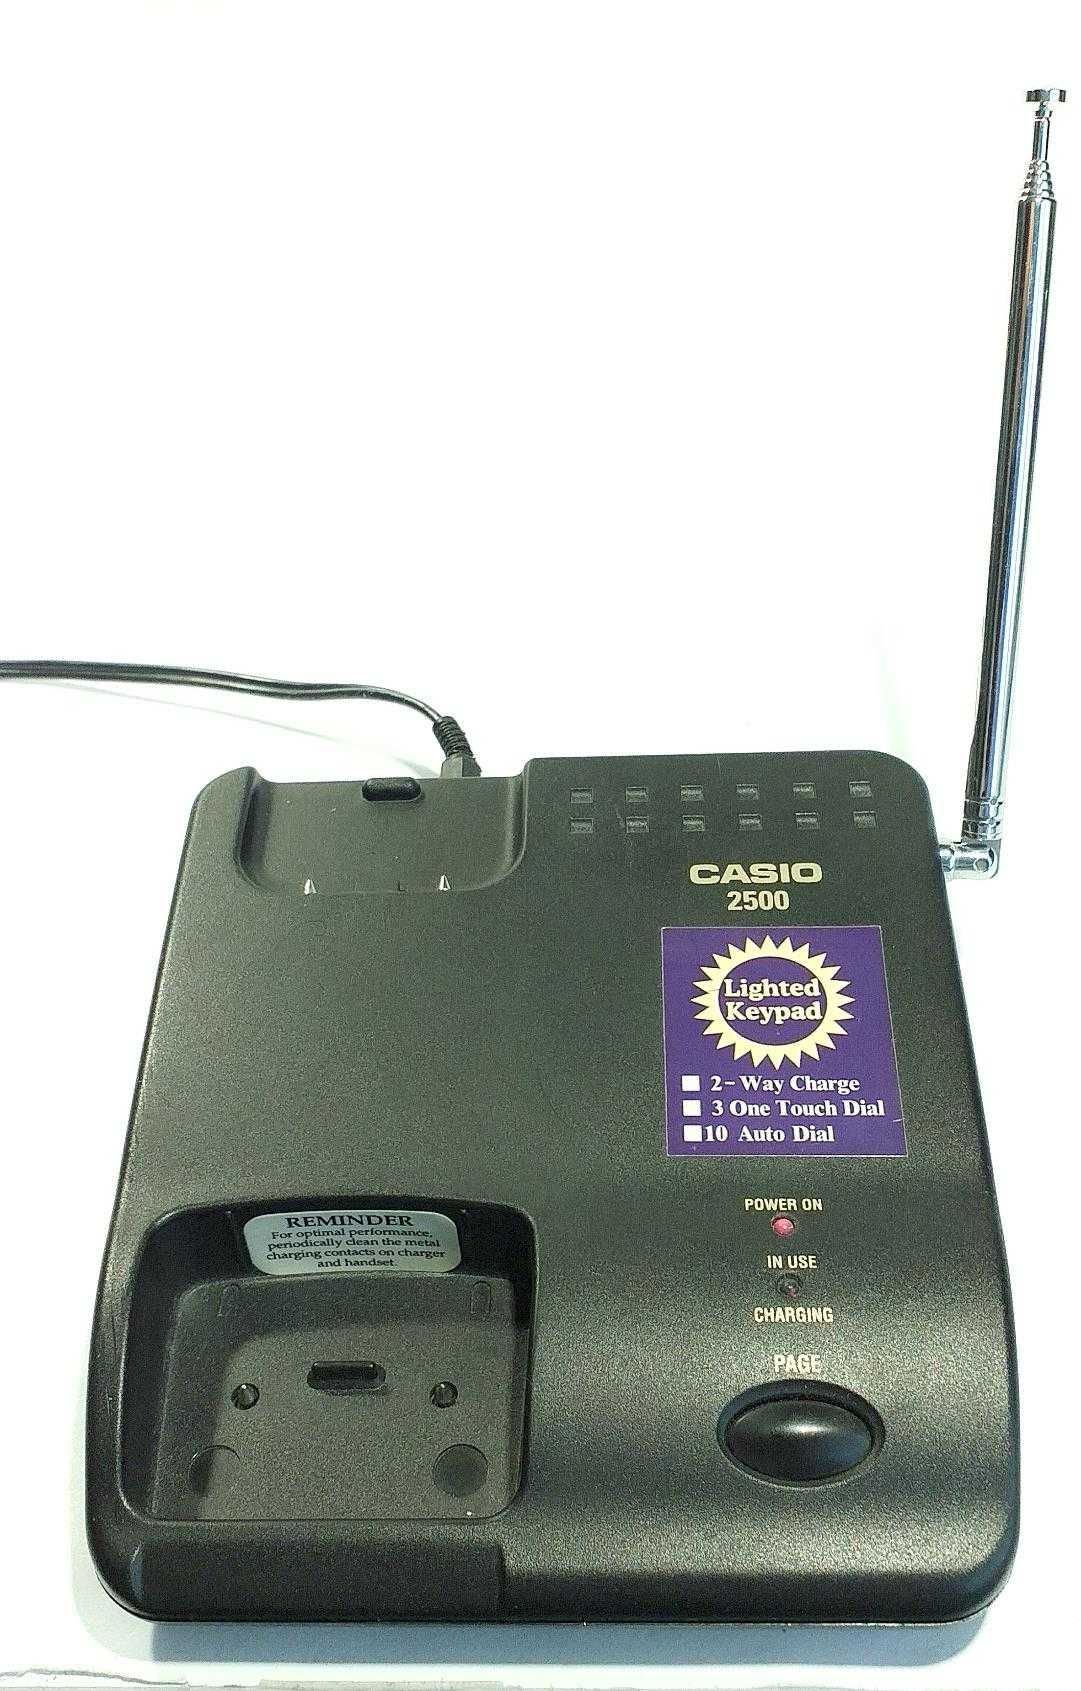 Stacjonarny telefon bezprzewodowy Casio 2500 baza.